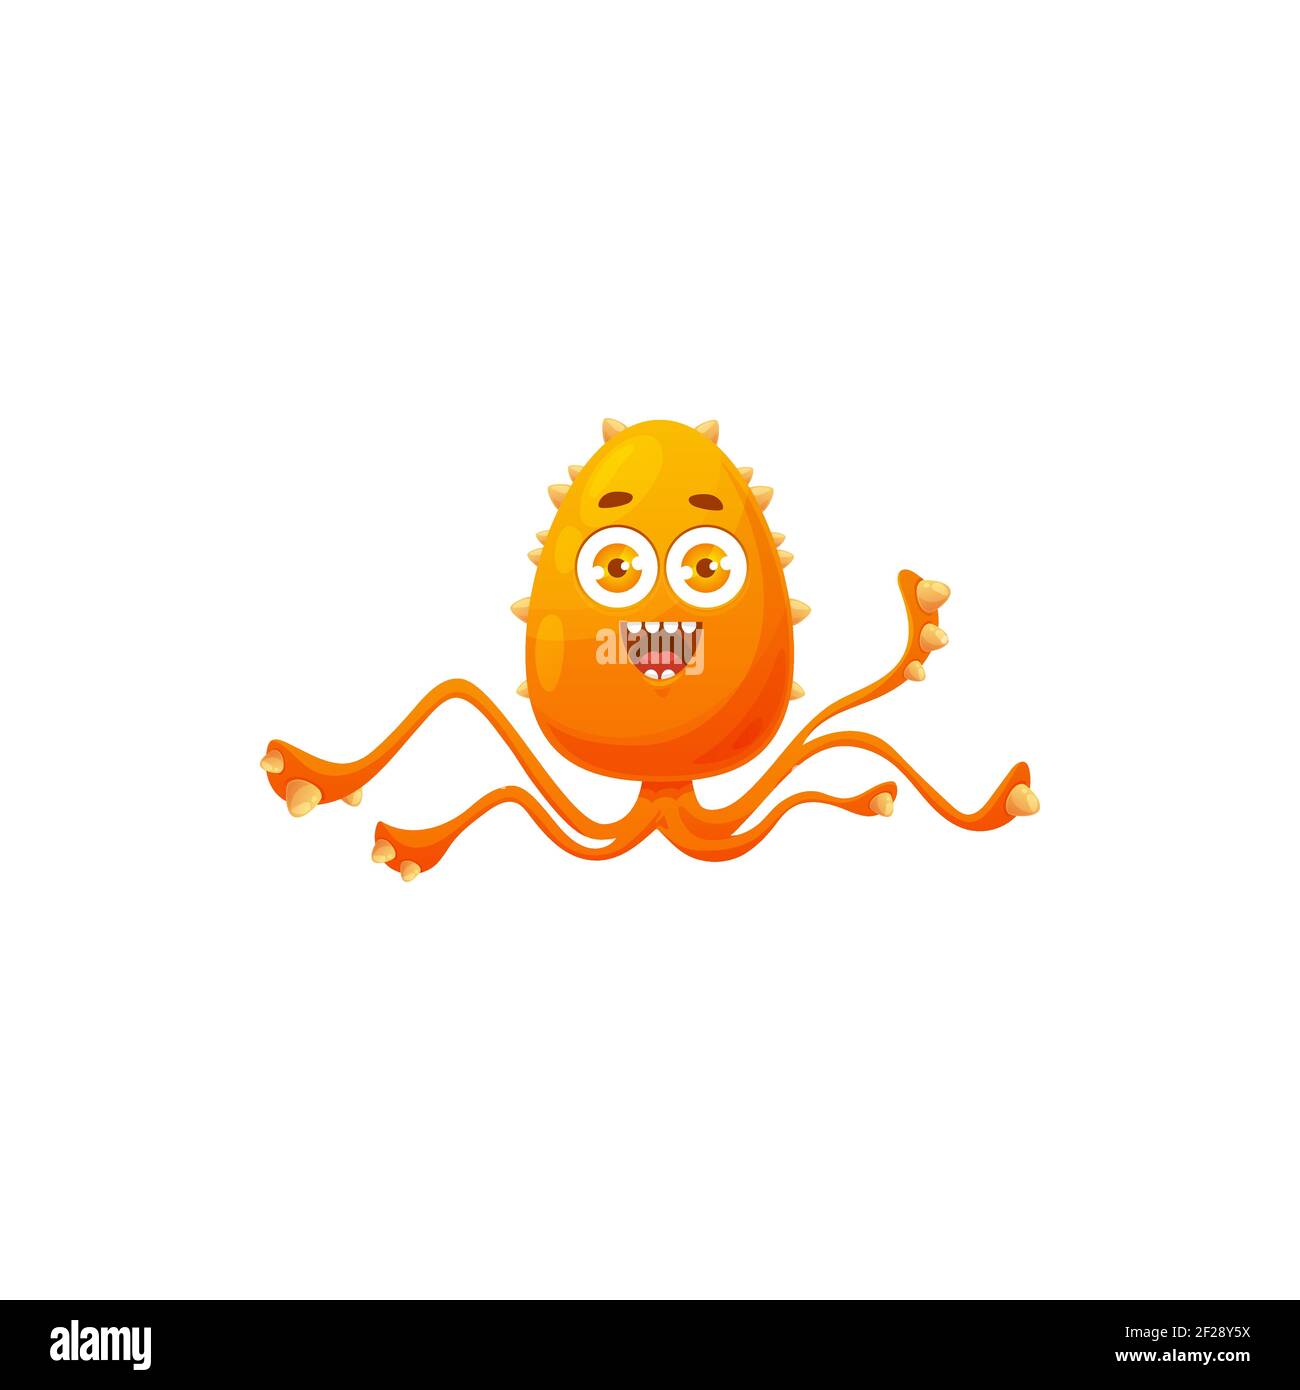 Icône de vecteur de cellule de virus de dessin animé, mignonne de bactéries orange avec de longs tentacules, joyeux caractère germe avec visage drôle. Microbe émotique de l'agent pathogène souriant Illustration de Vecteur